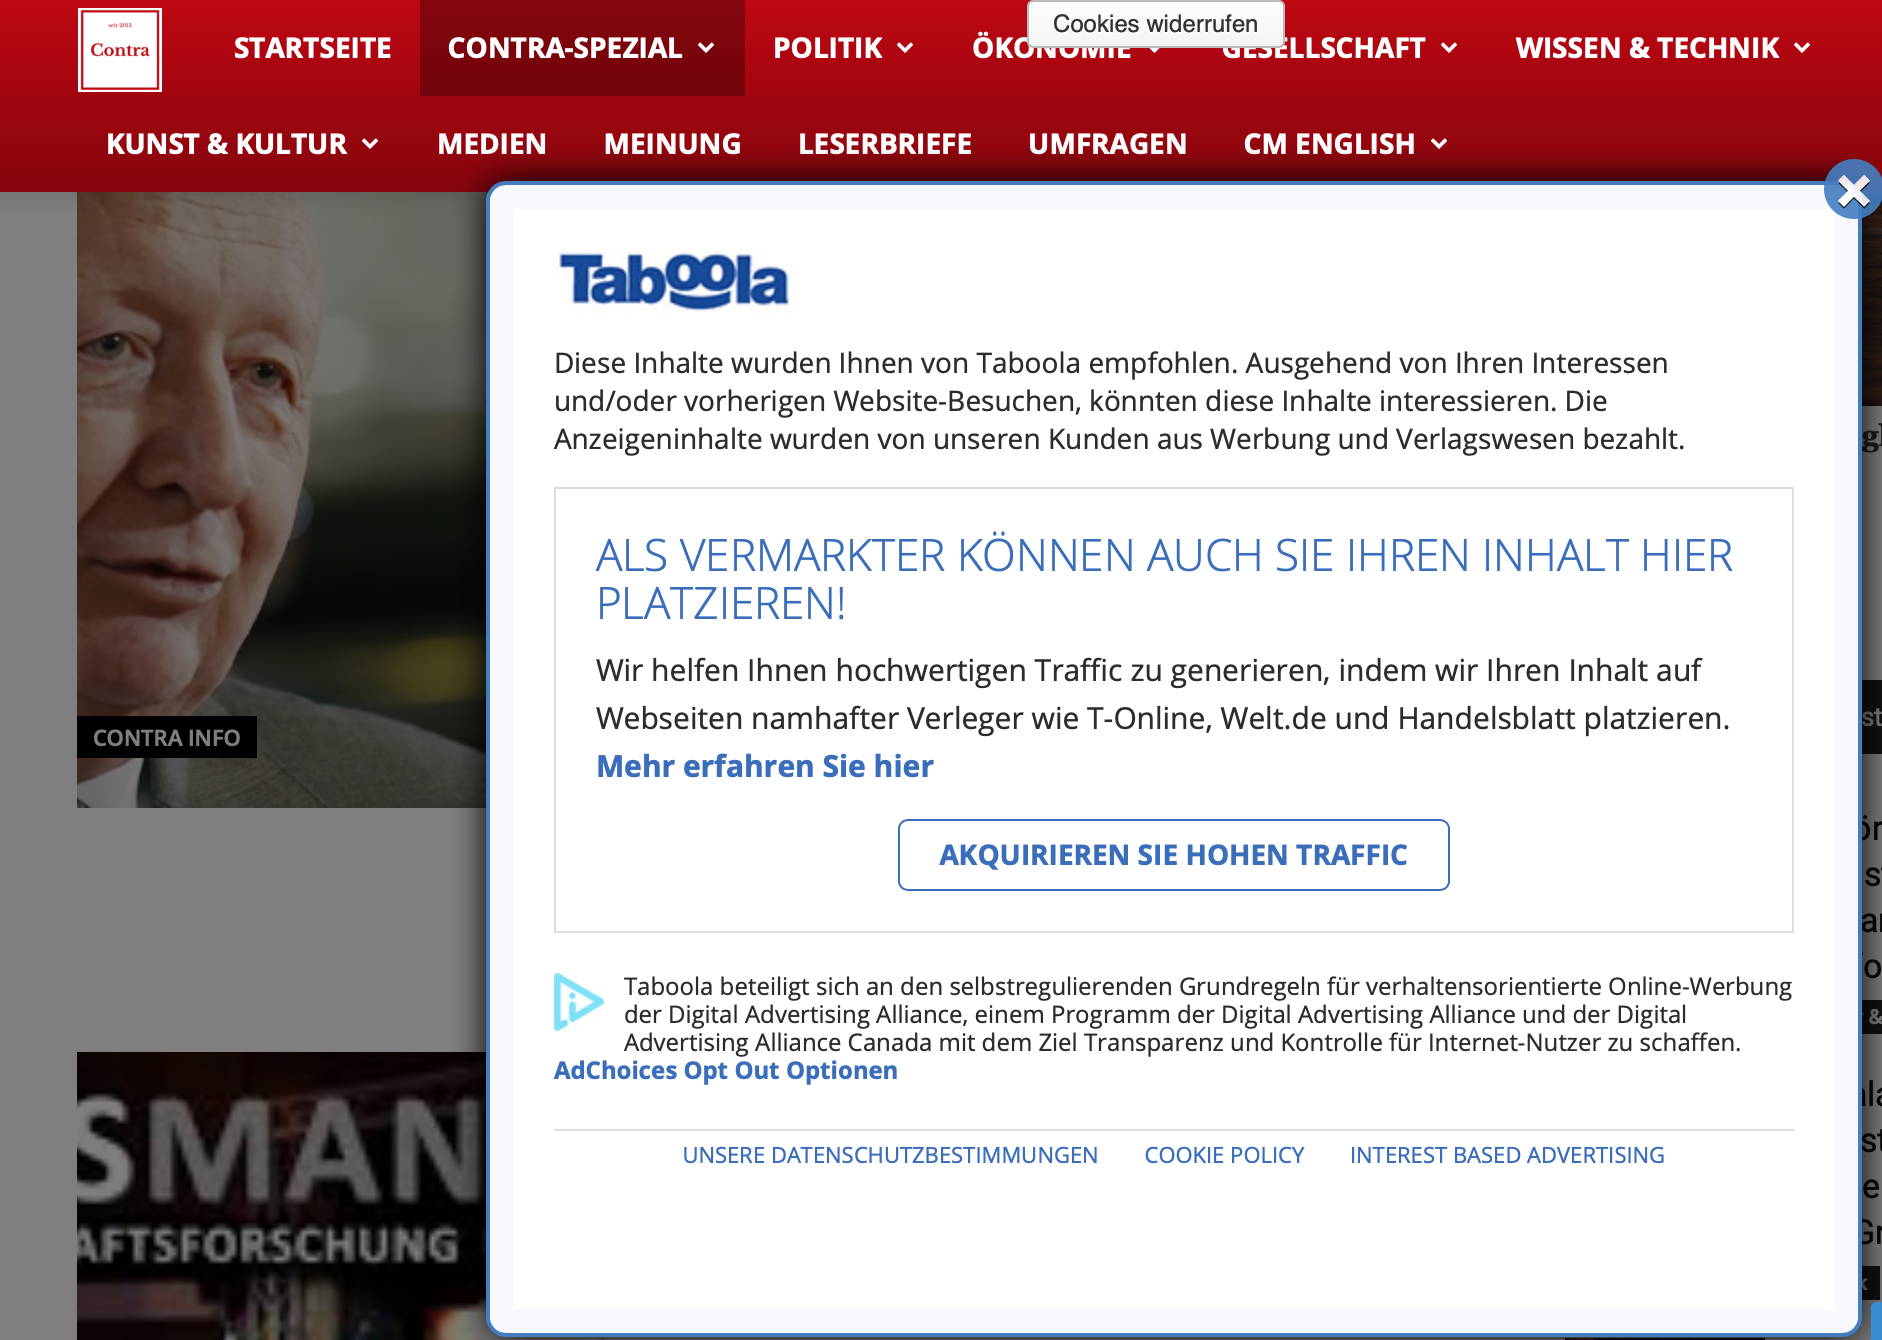 Werbung üner Taboola auf der Website Contra Magazin (Last view: 28.2.19)